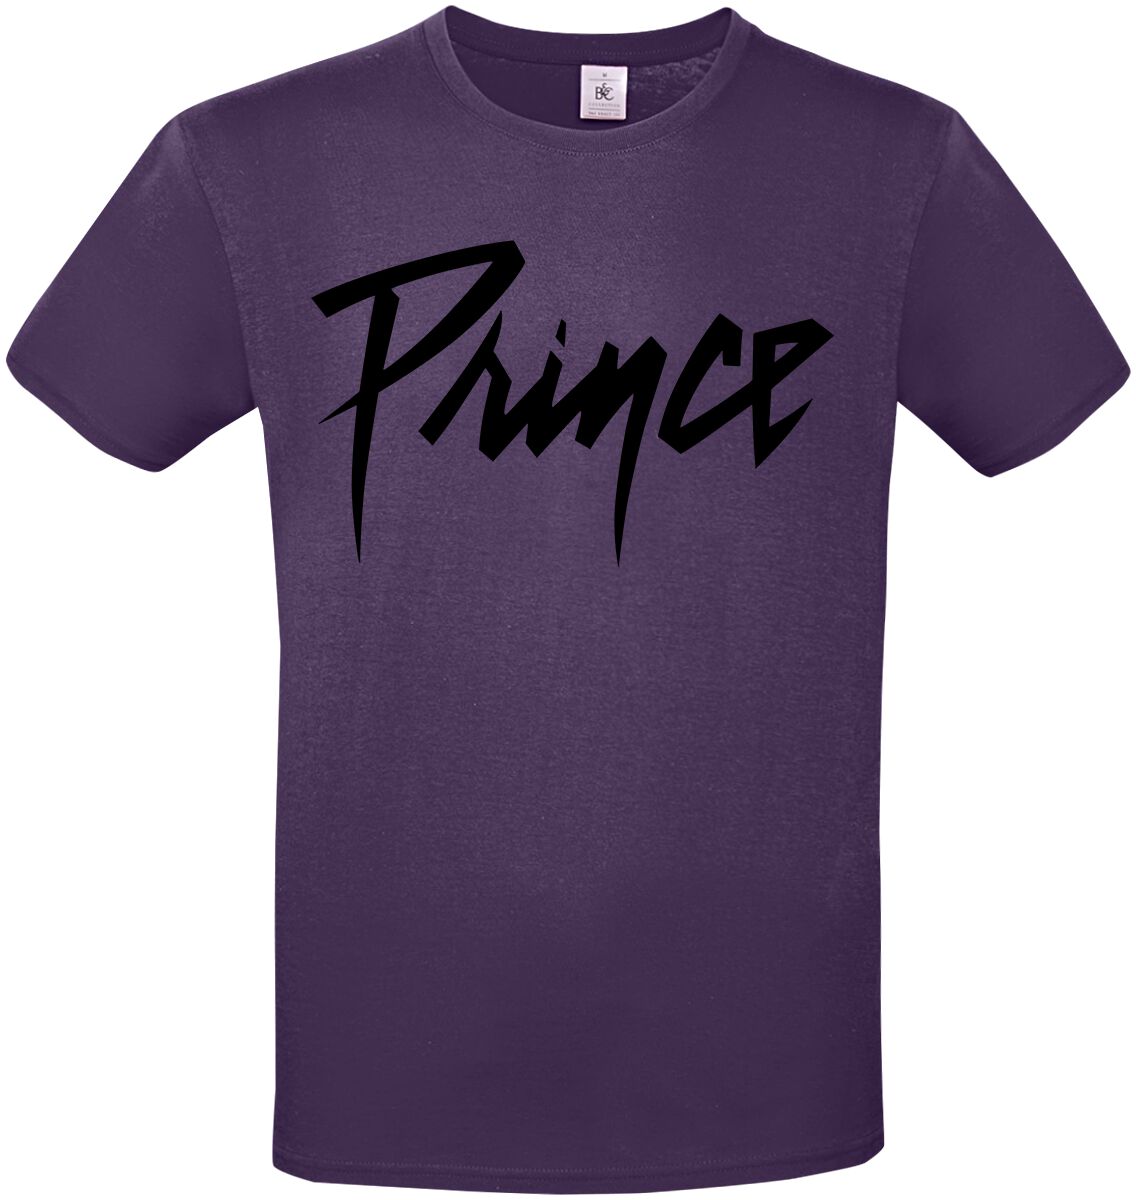 prince t-shirt - name logo - s bis m - fÃ¼r damen - grÃ¶ÃŸe m - - lizenziertes merchandise! lila donna